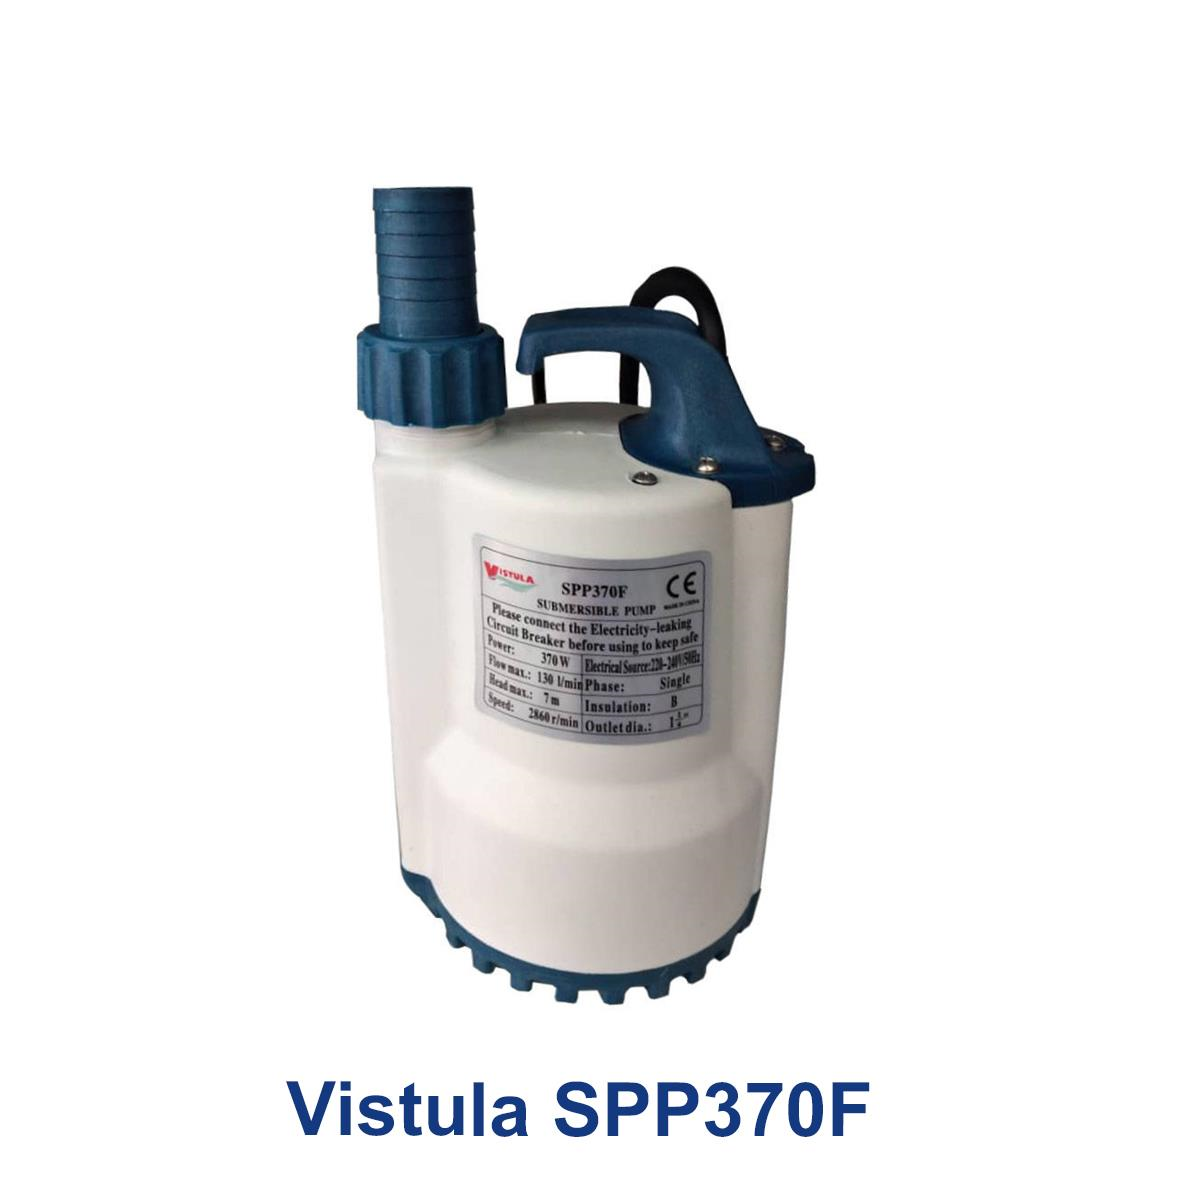 Vistula-SPP370F